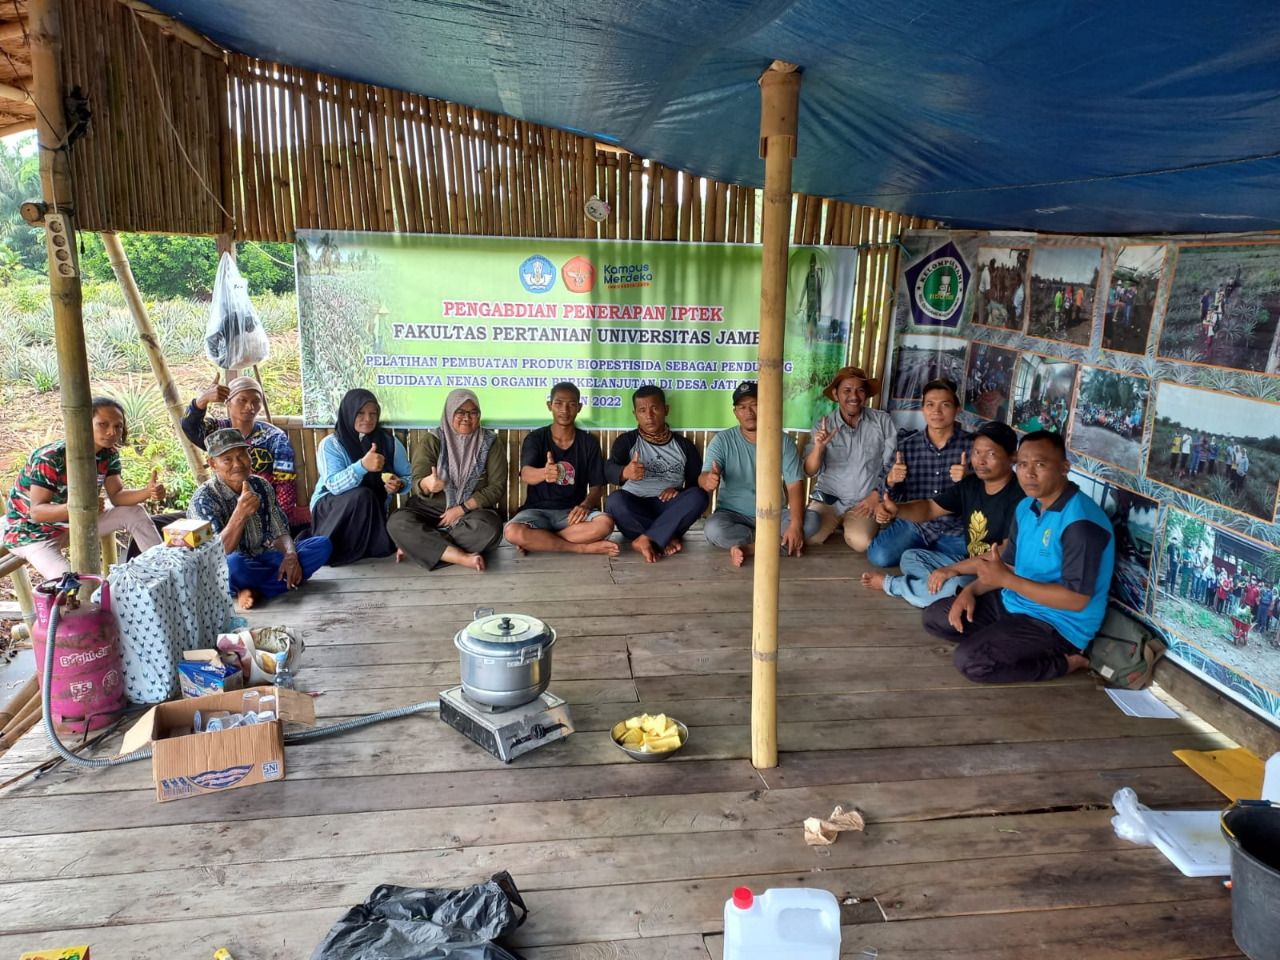 Pelatihan Pembuatan Biopestisida Sebagai Pendukung Budidaya Nenas Organik Berkelanjutan di Desa Jati Mulyo